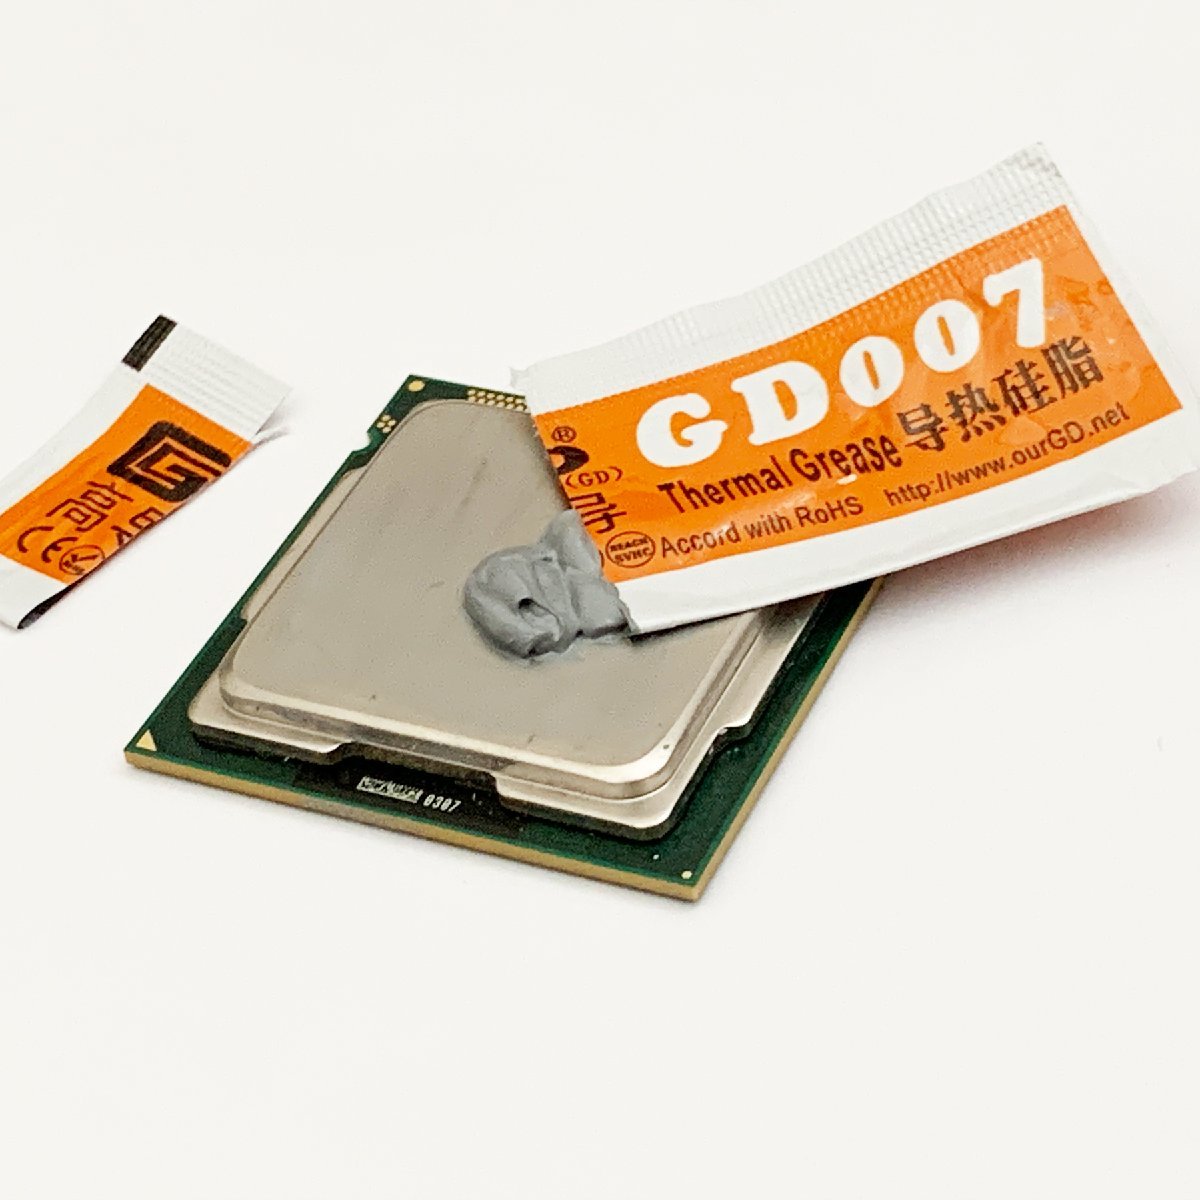 CPU смазка GD007 высокая эффективность изоляция . модель силикон теплоотвод используя порез . модель x 3 выпуск 